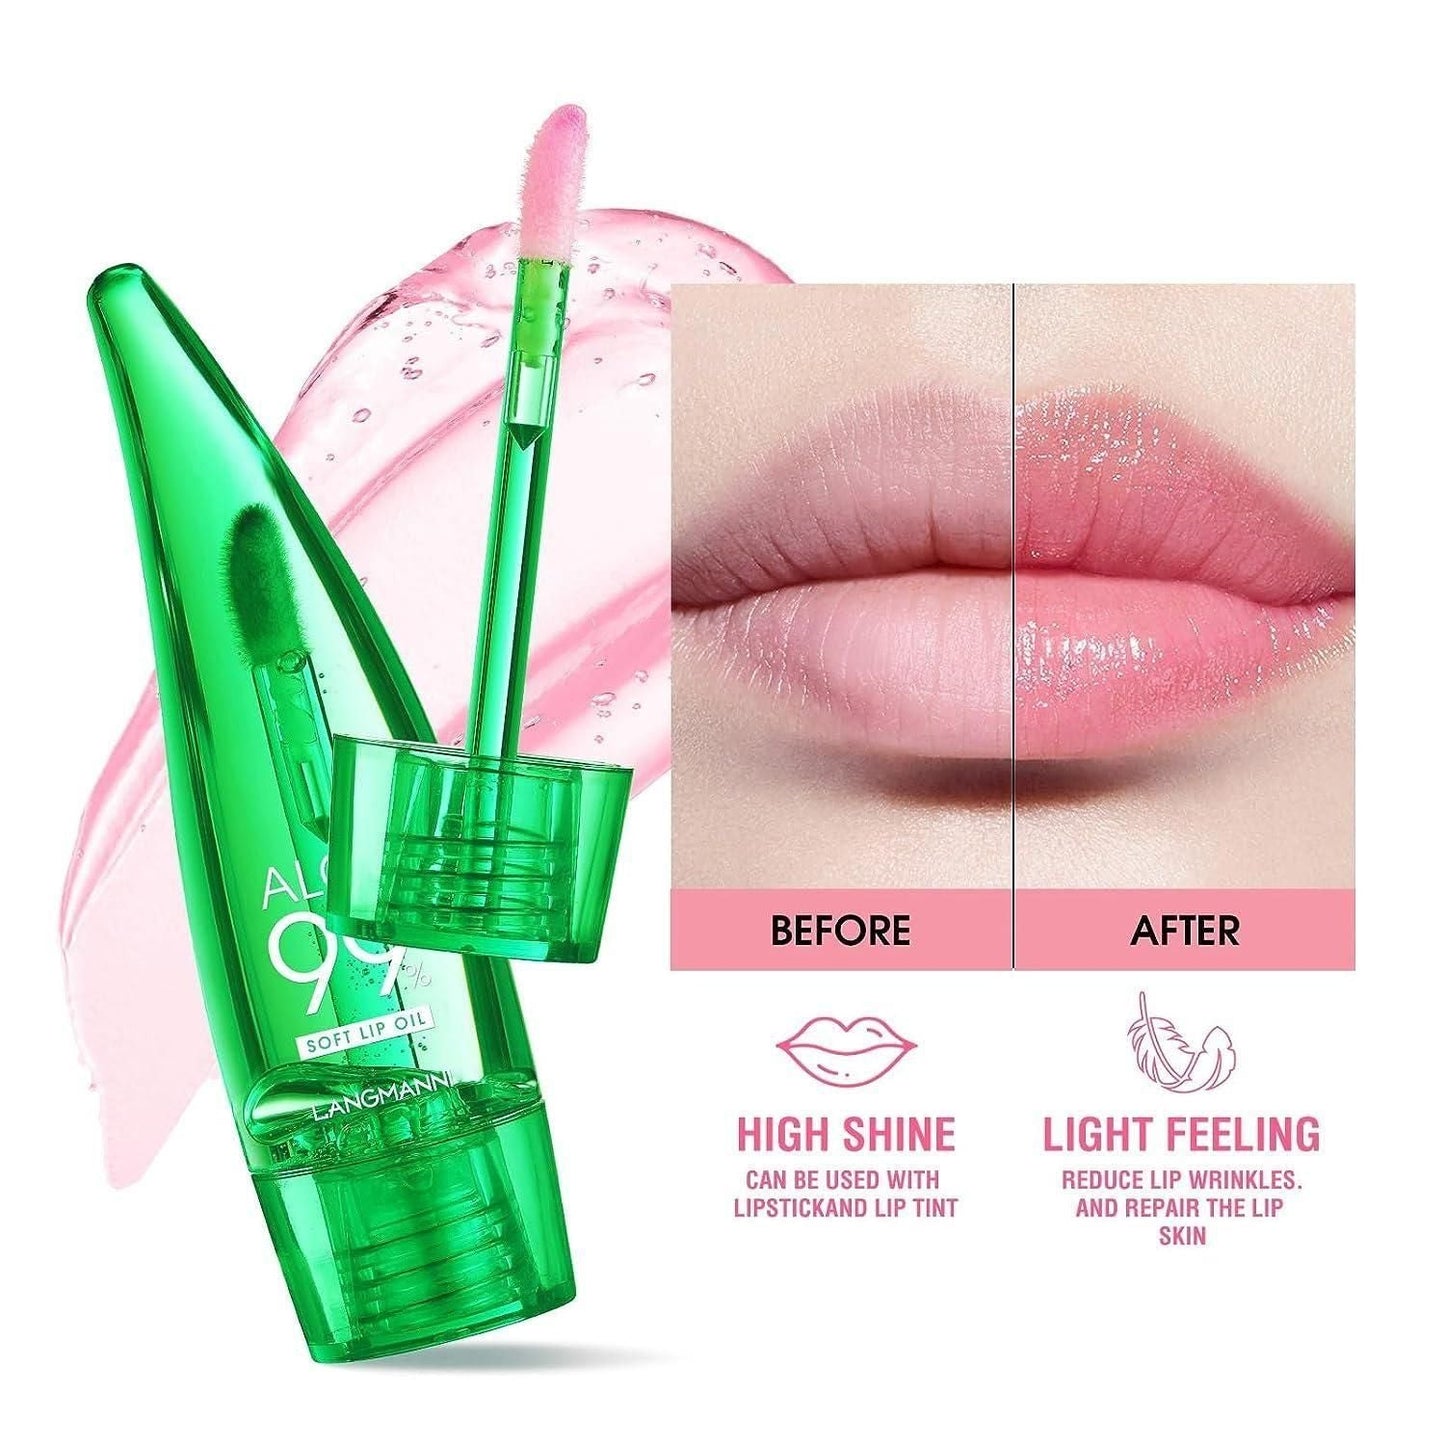 Aloe Vera Magic Color-Changing Lip Balm